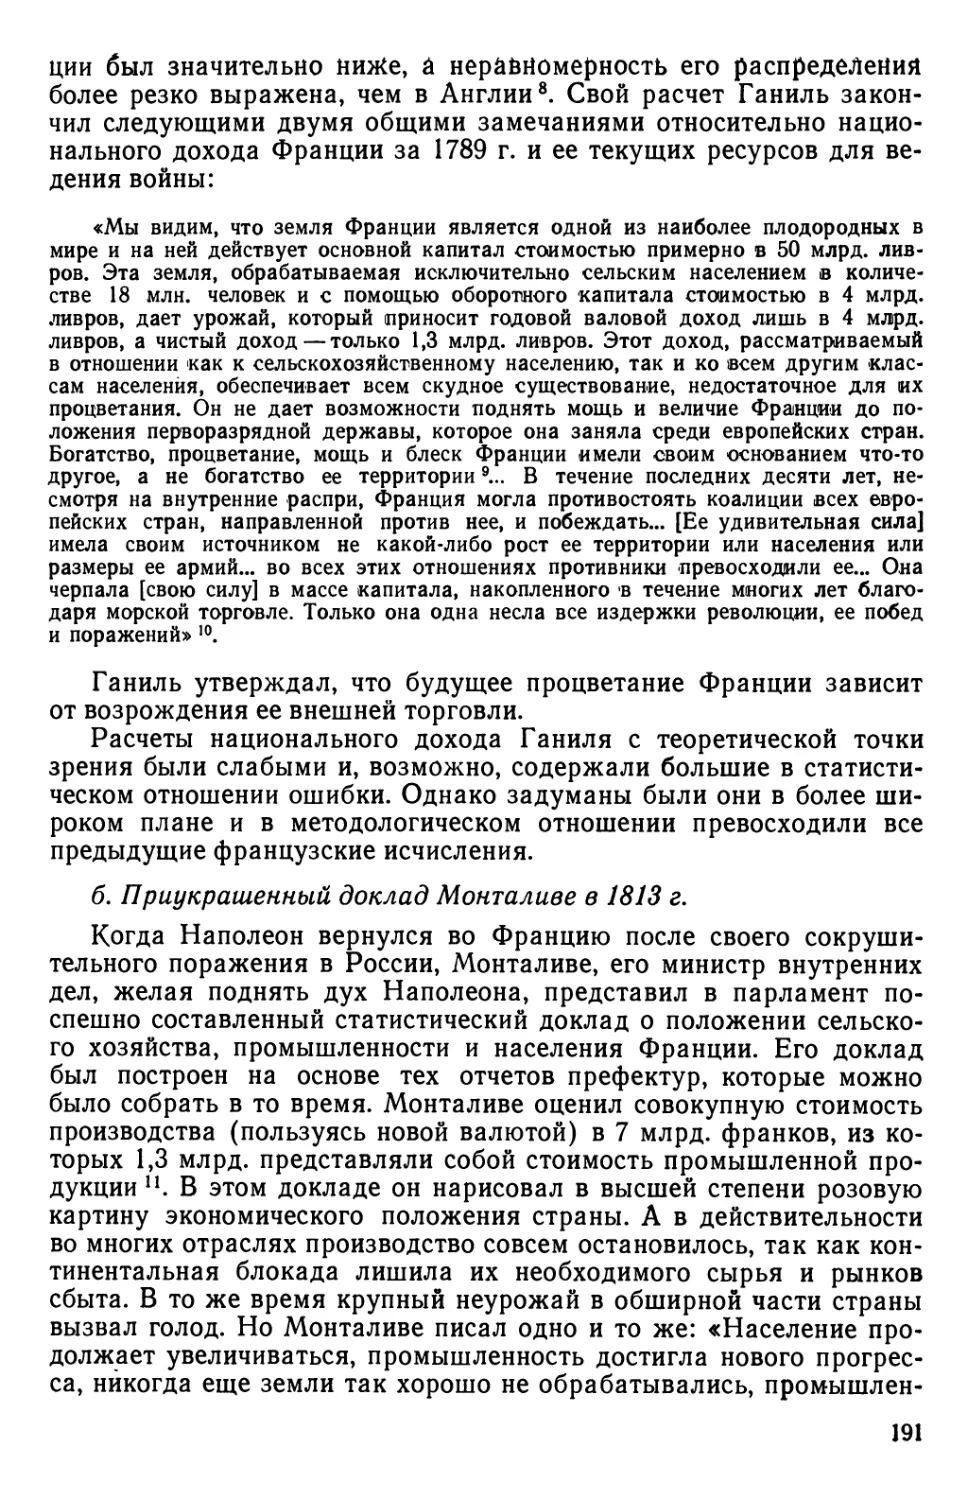 б. Приукрашенный доклад Монталиве в 1813 г